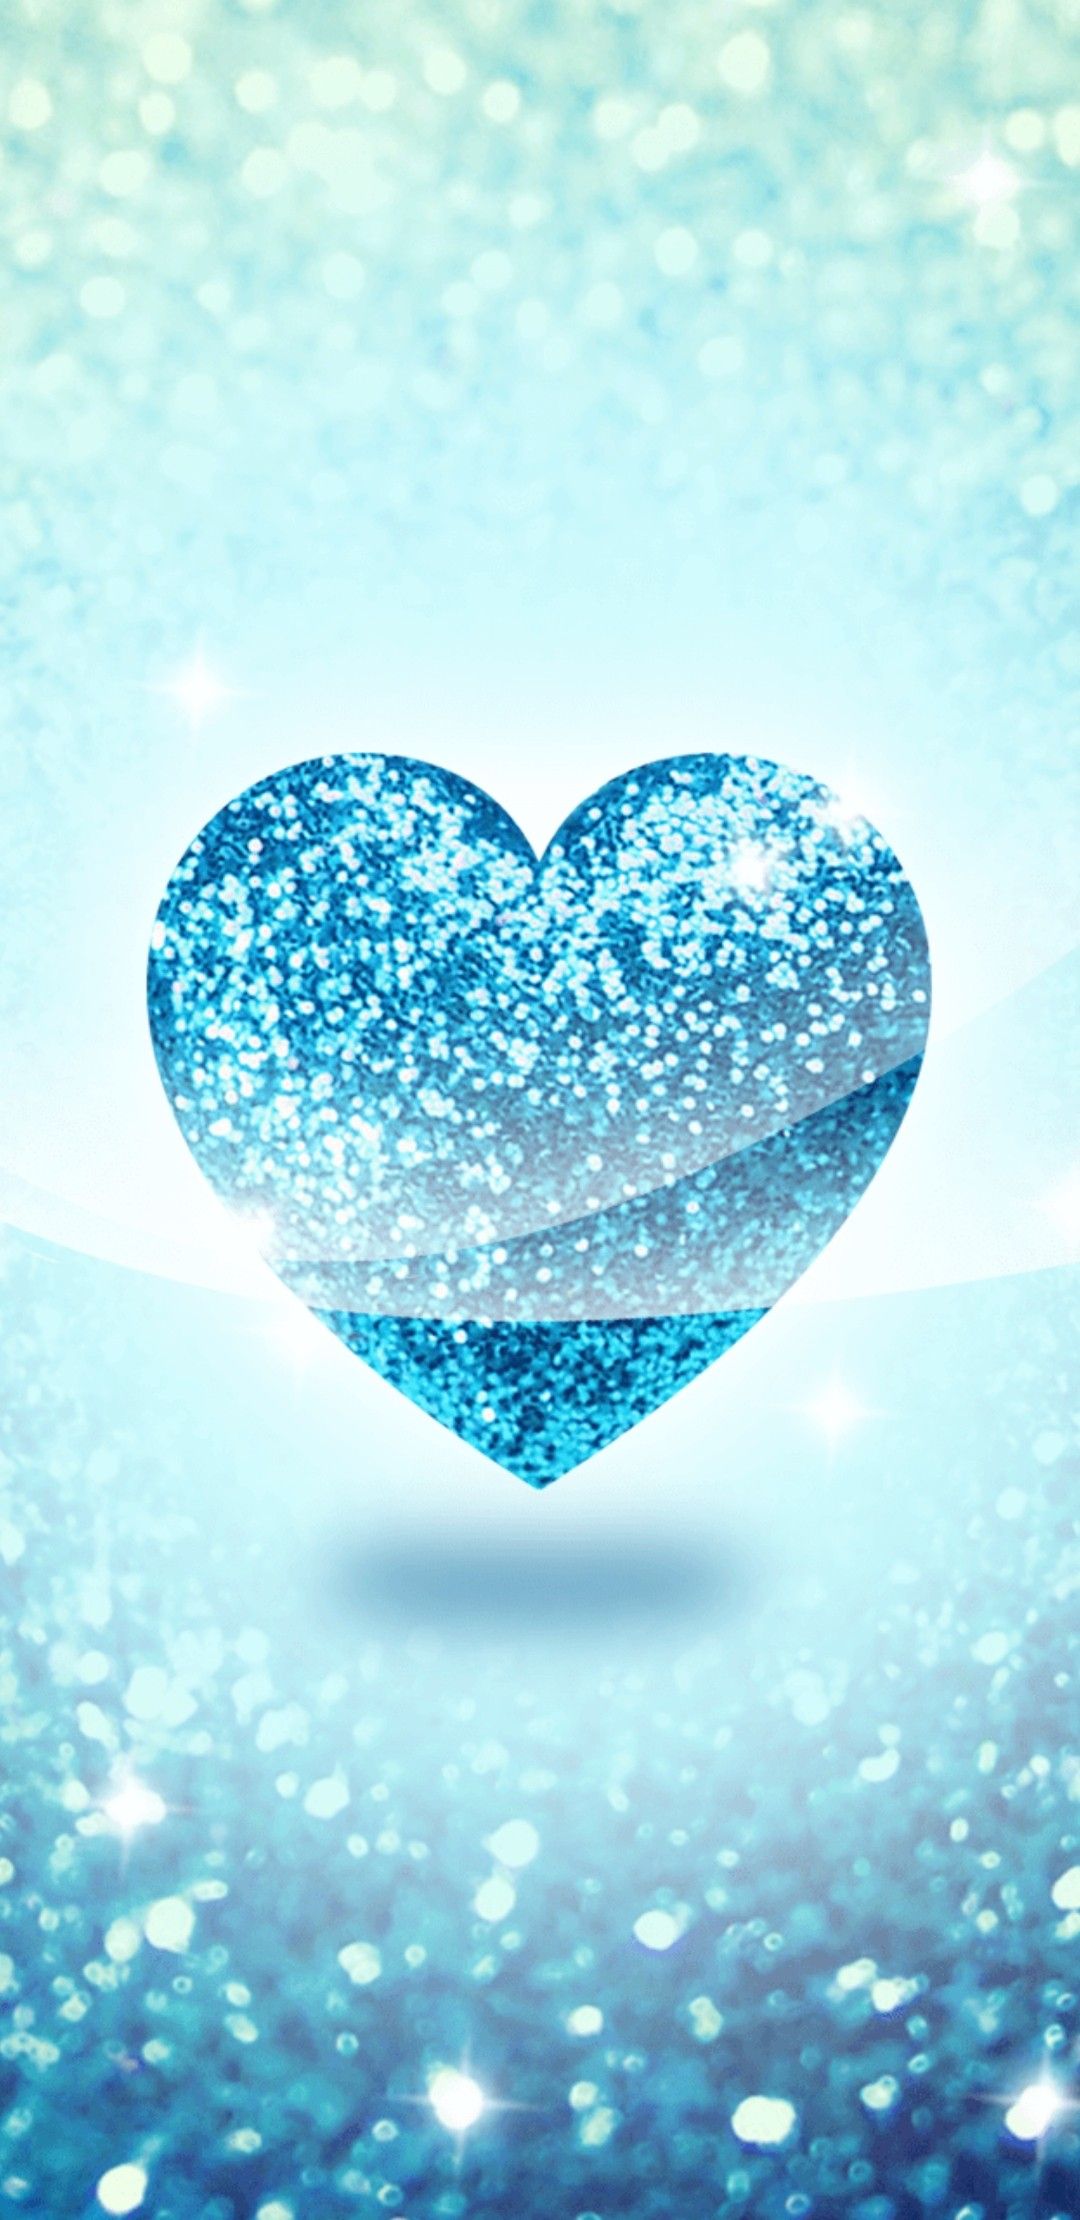 Blue Heart Wallpaper Heart Iphone Wallpaper, Wallpaper - Blue Heart Wallpaper For Iphone , HD Wallpaper & Backgrounds